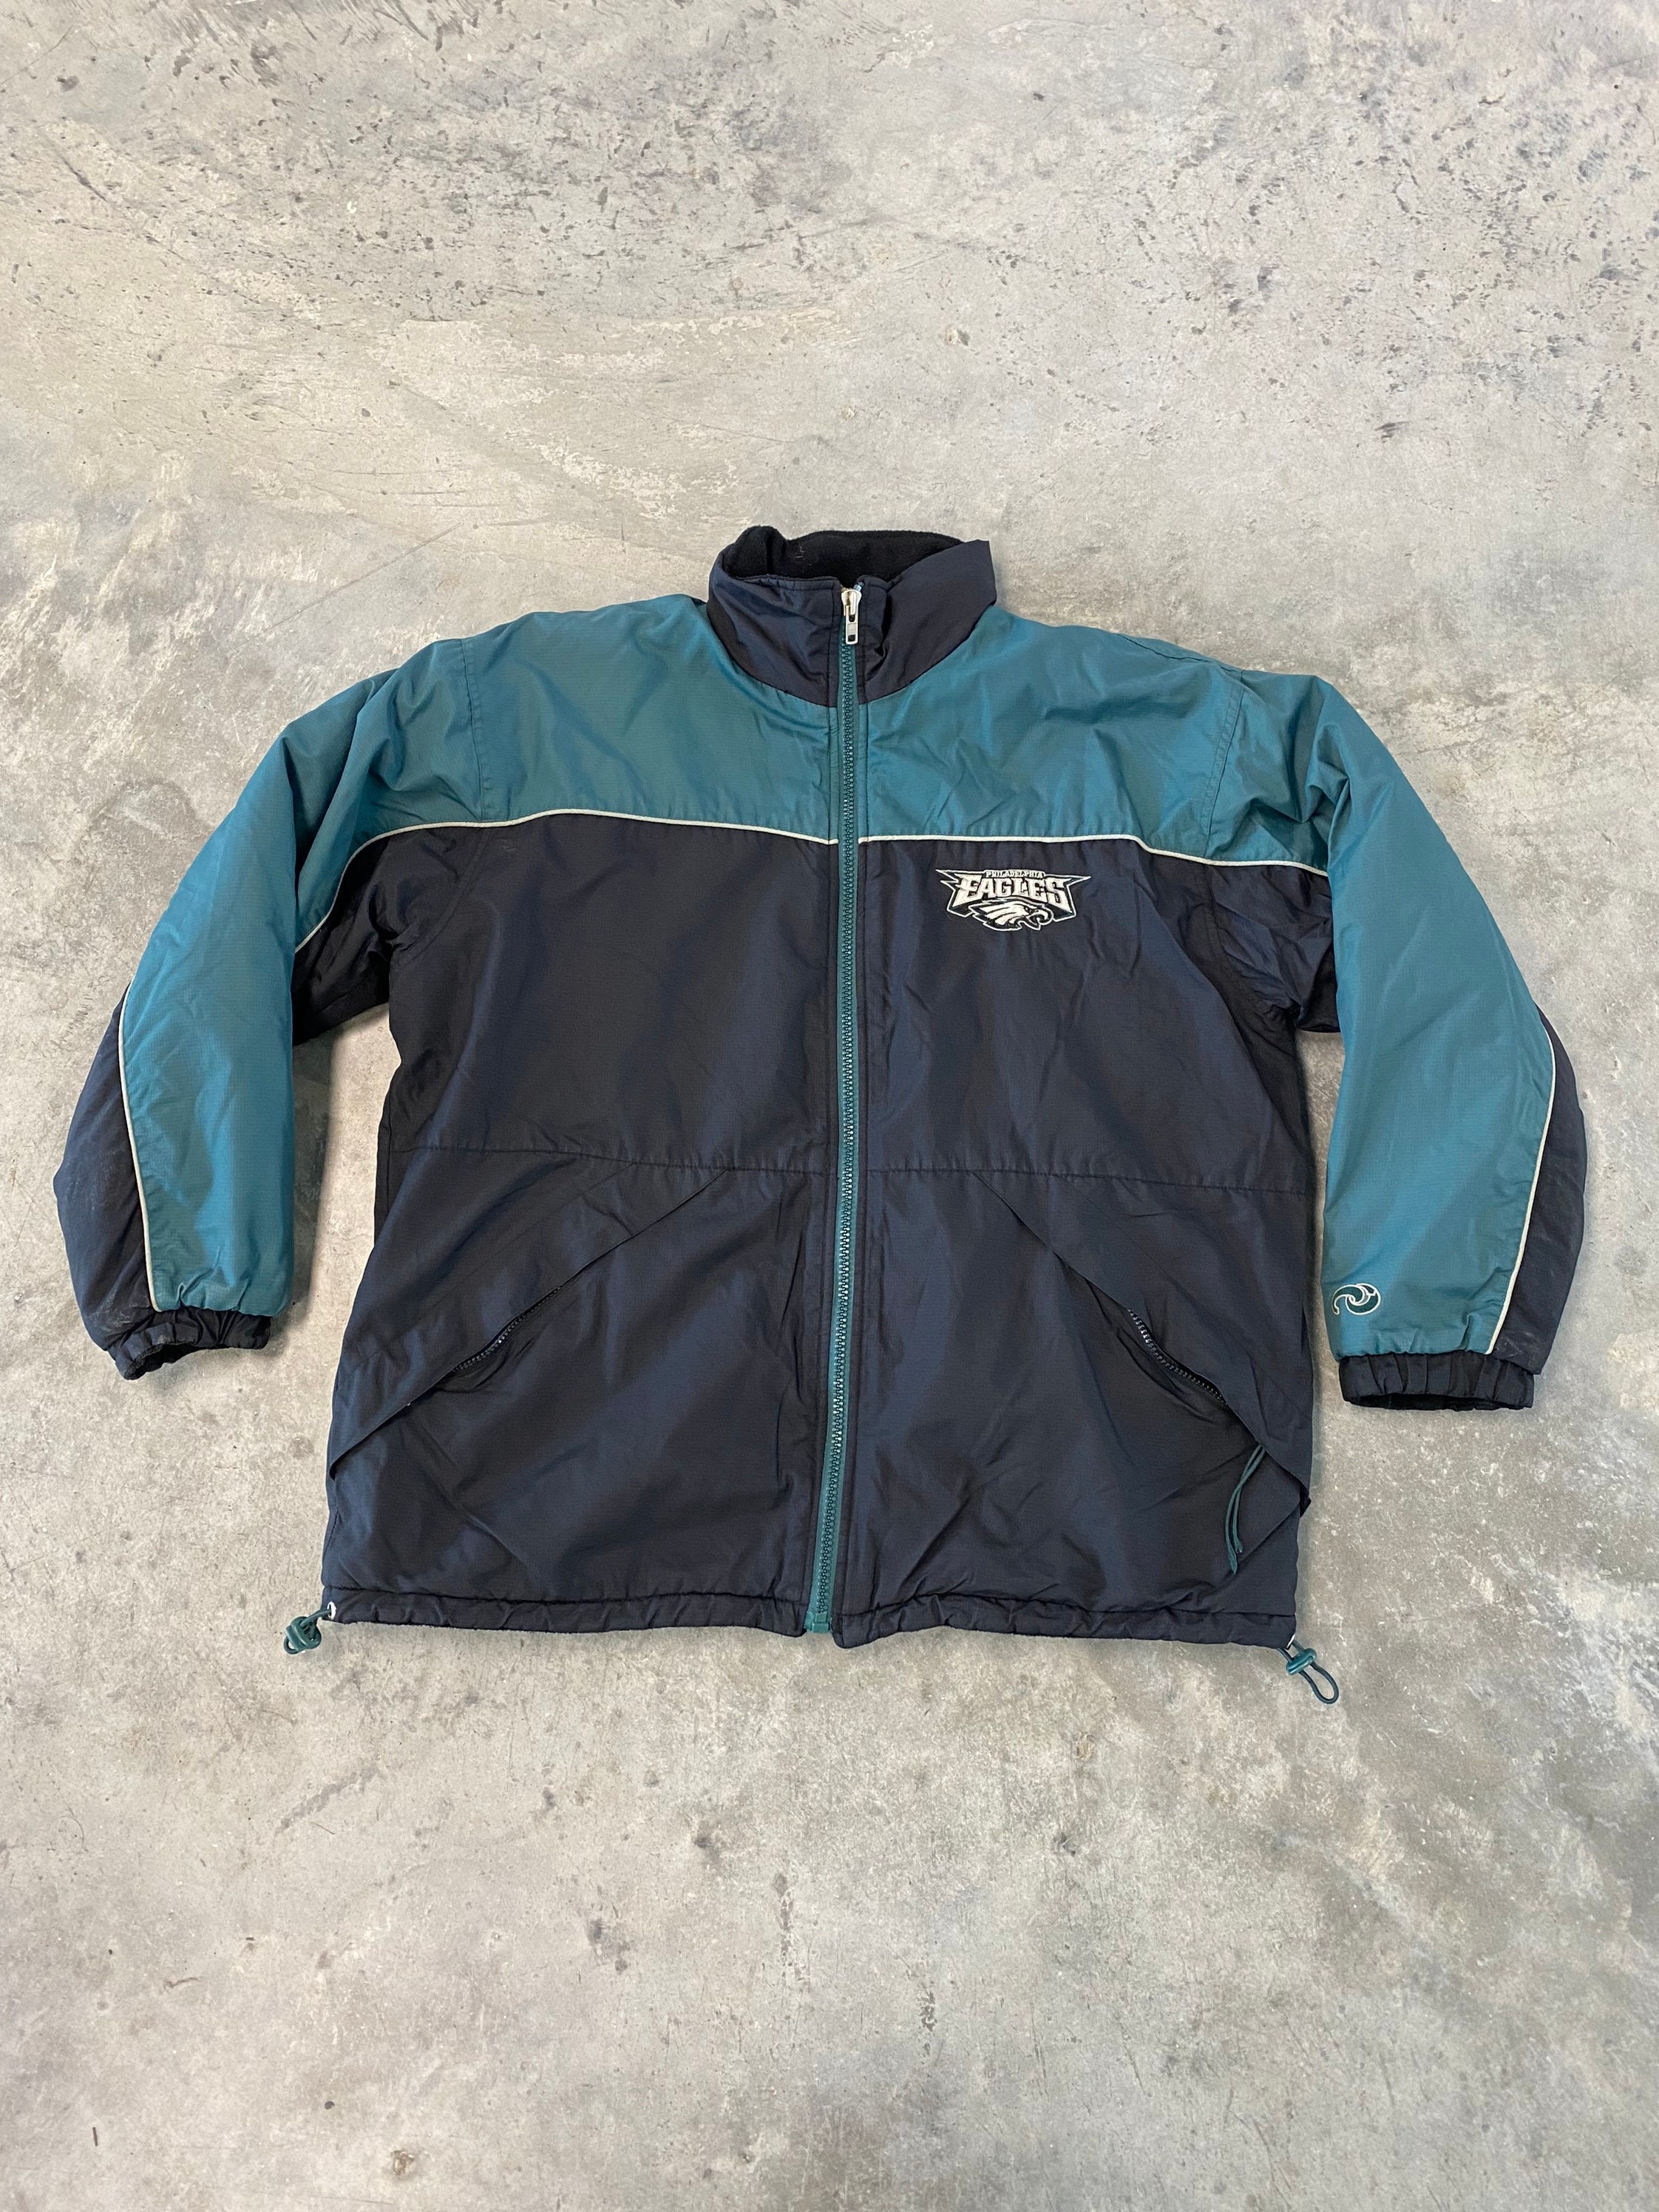 Vintage Reebok - Philadelphia Eagles Leather Jacket 1990s X-Large